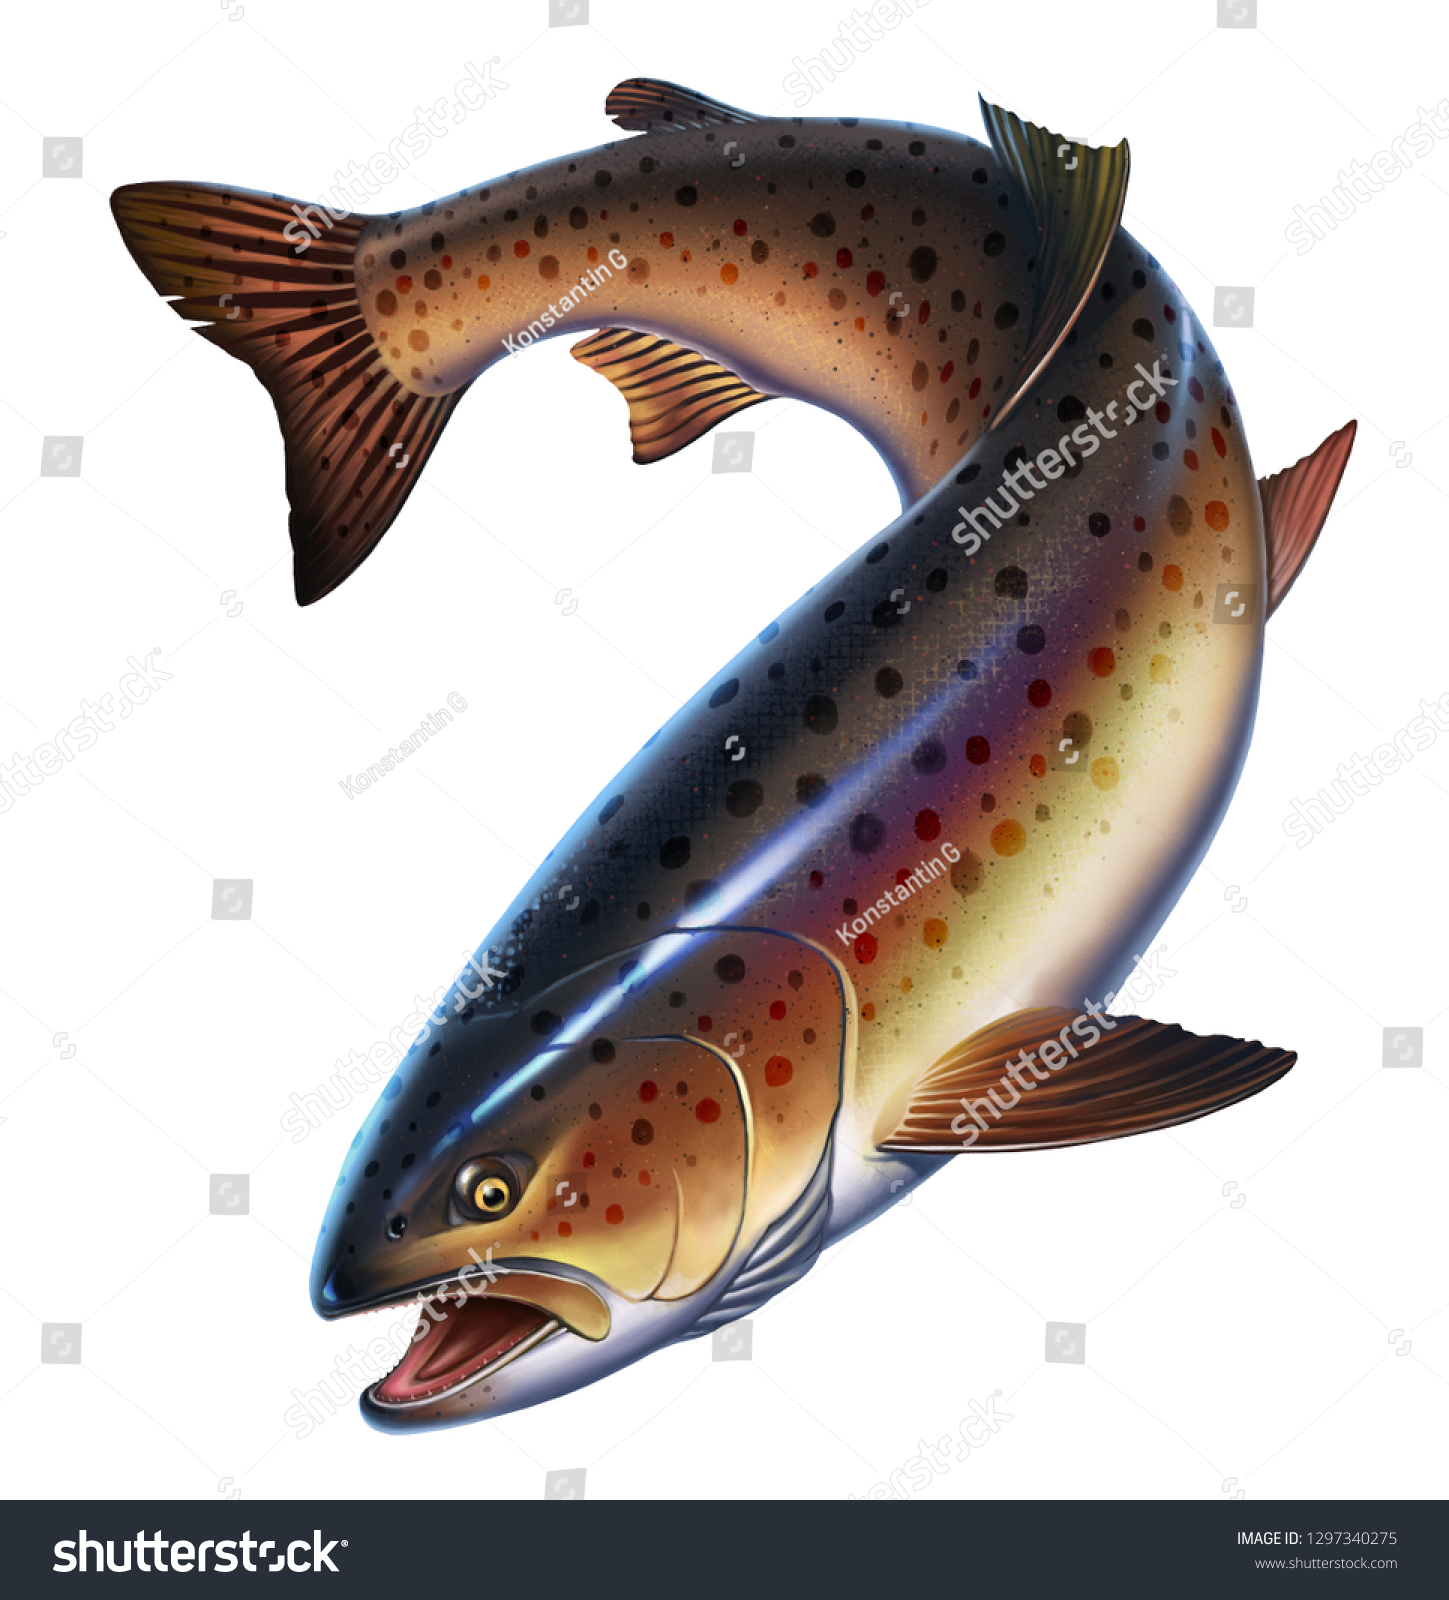 白い背景にニジマスの魚のリアルなイラスト マスの珍味 野生の川魚 のイラスト素材